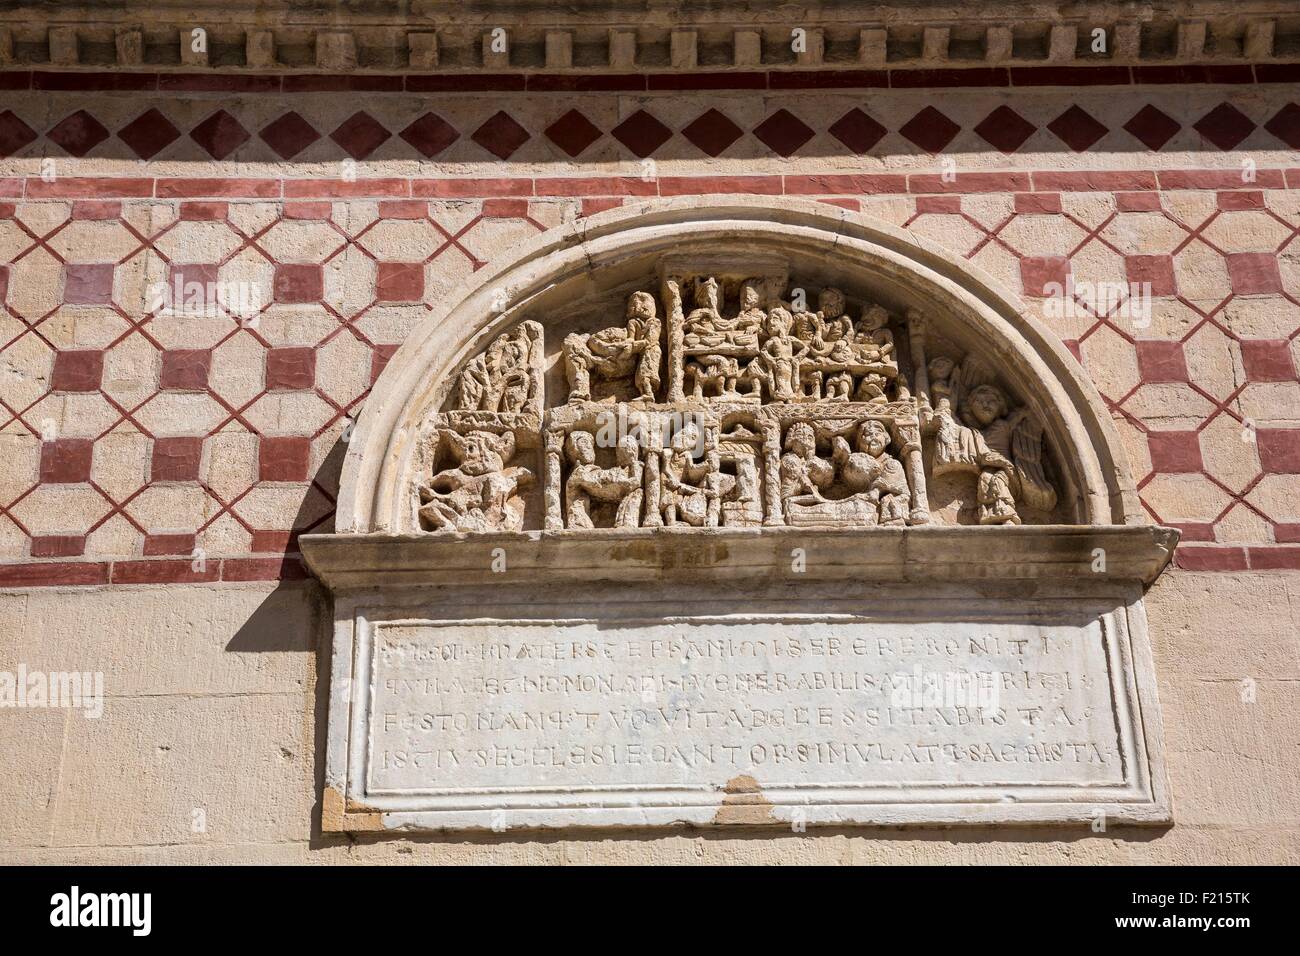 Francia, Ródano, Lyon, sitio histórico, bajorrelieve, St Martin d'Ainay Basílica antigua iglesia abacial de estilo románico (siglo XII) Foto de stock